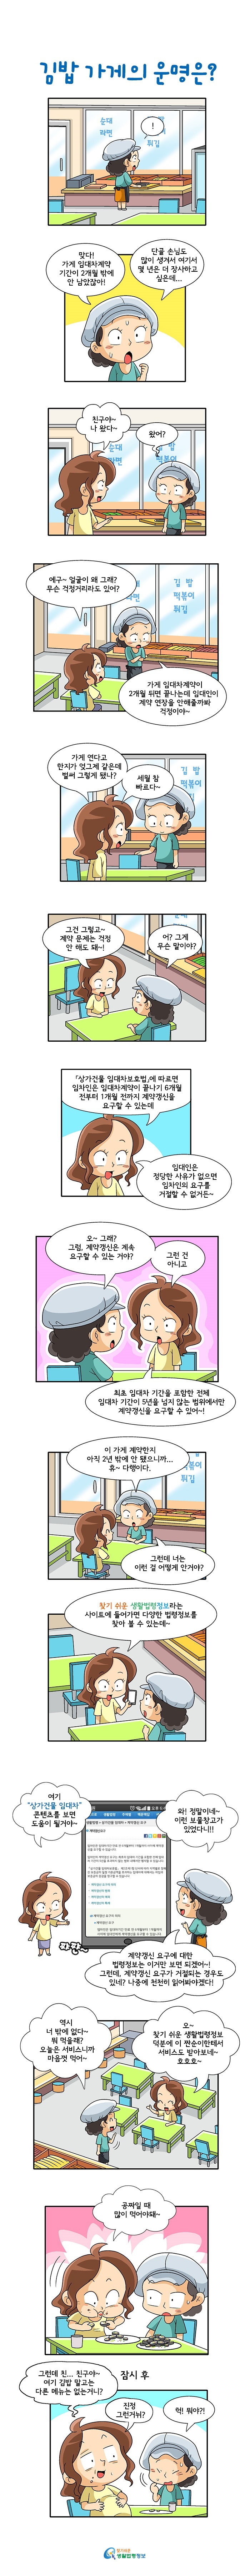 <제36화> 김밥 가게의 운명은?